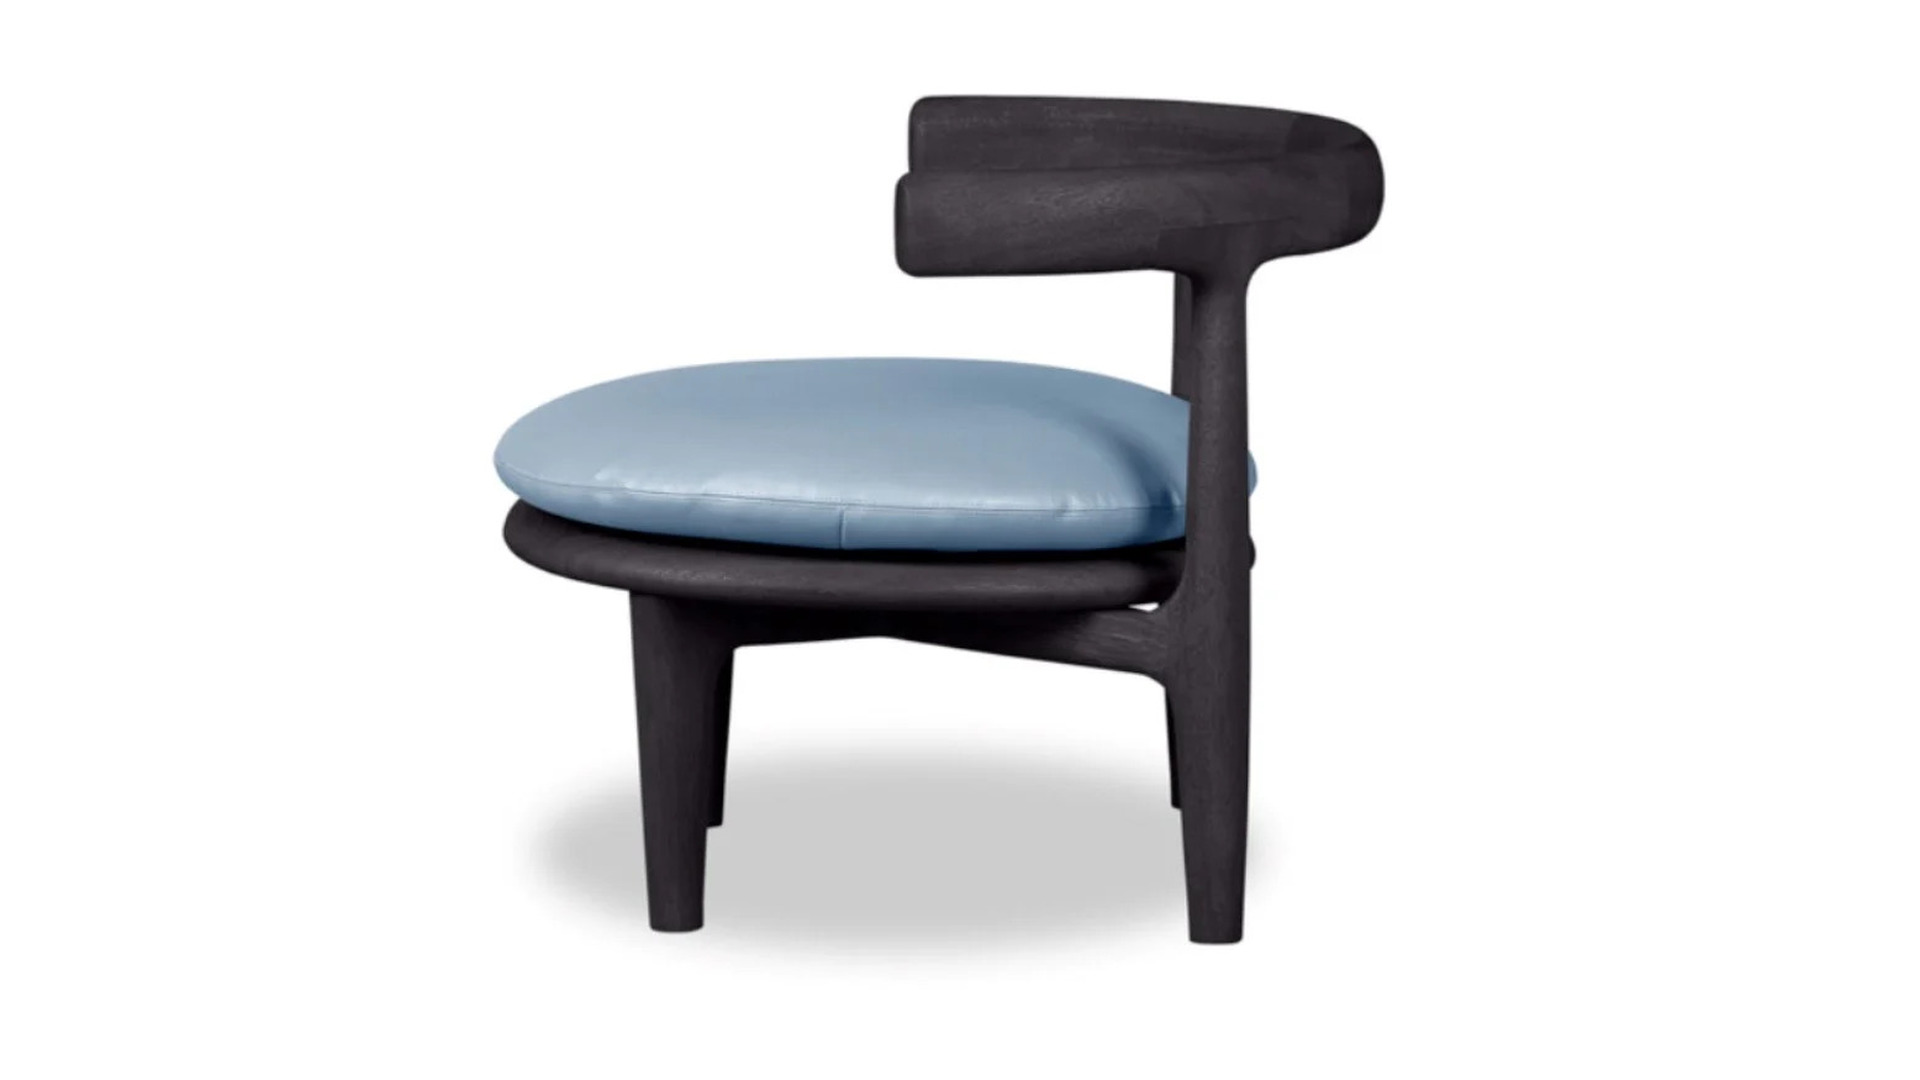 HORA Barneveld Baxter Himba fauteuil armstoel armchair stoel chair 3.jpg